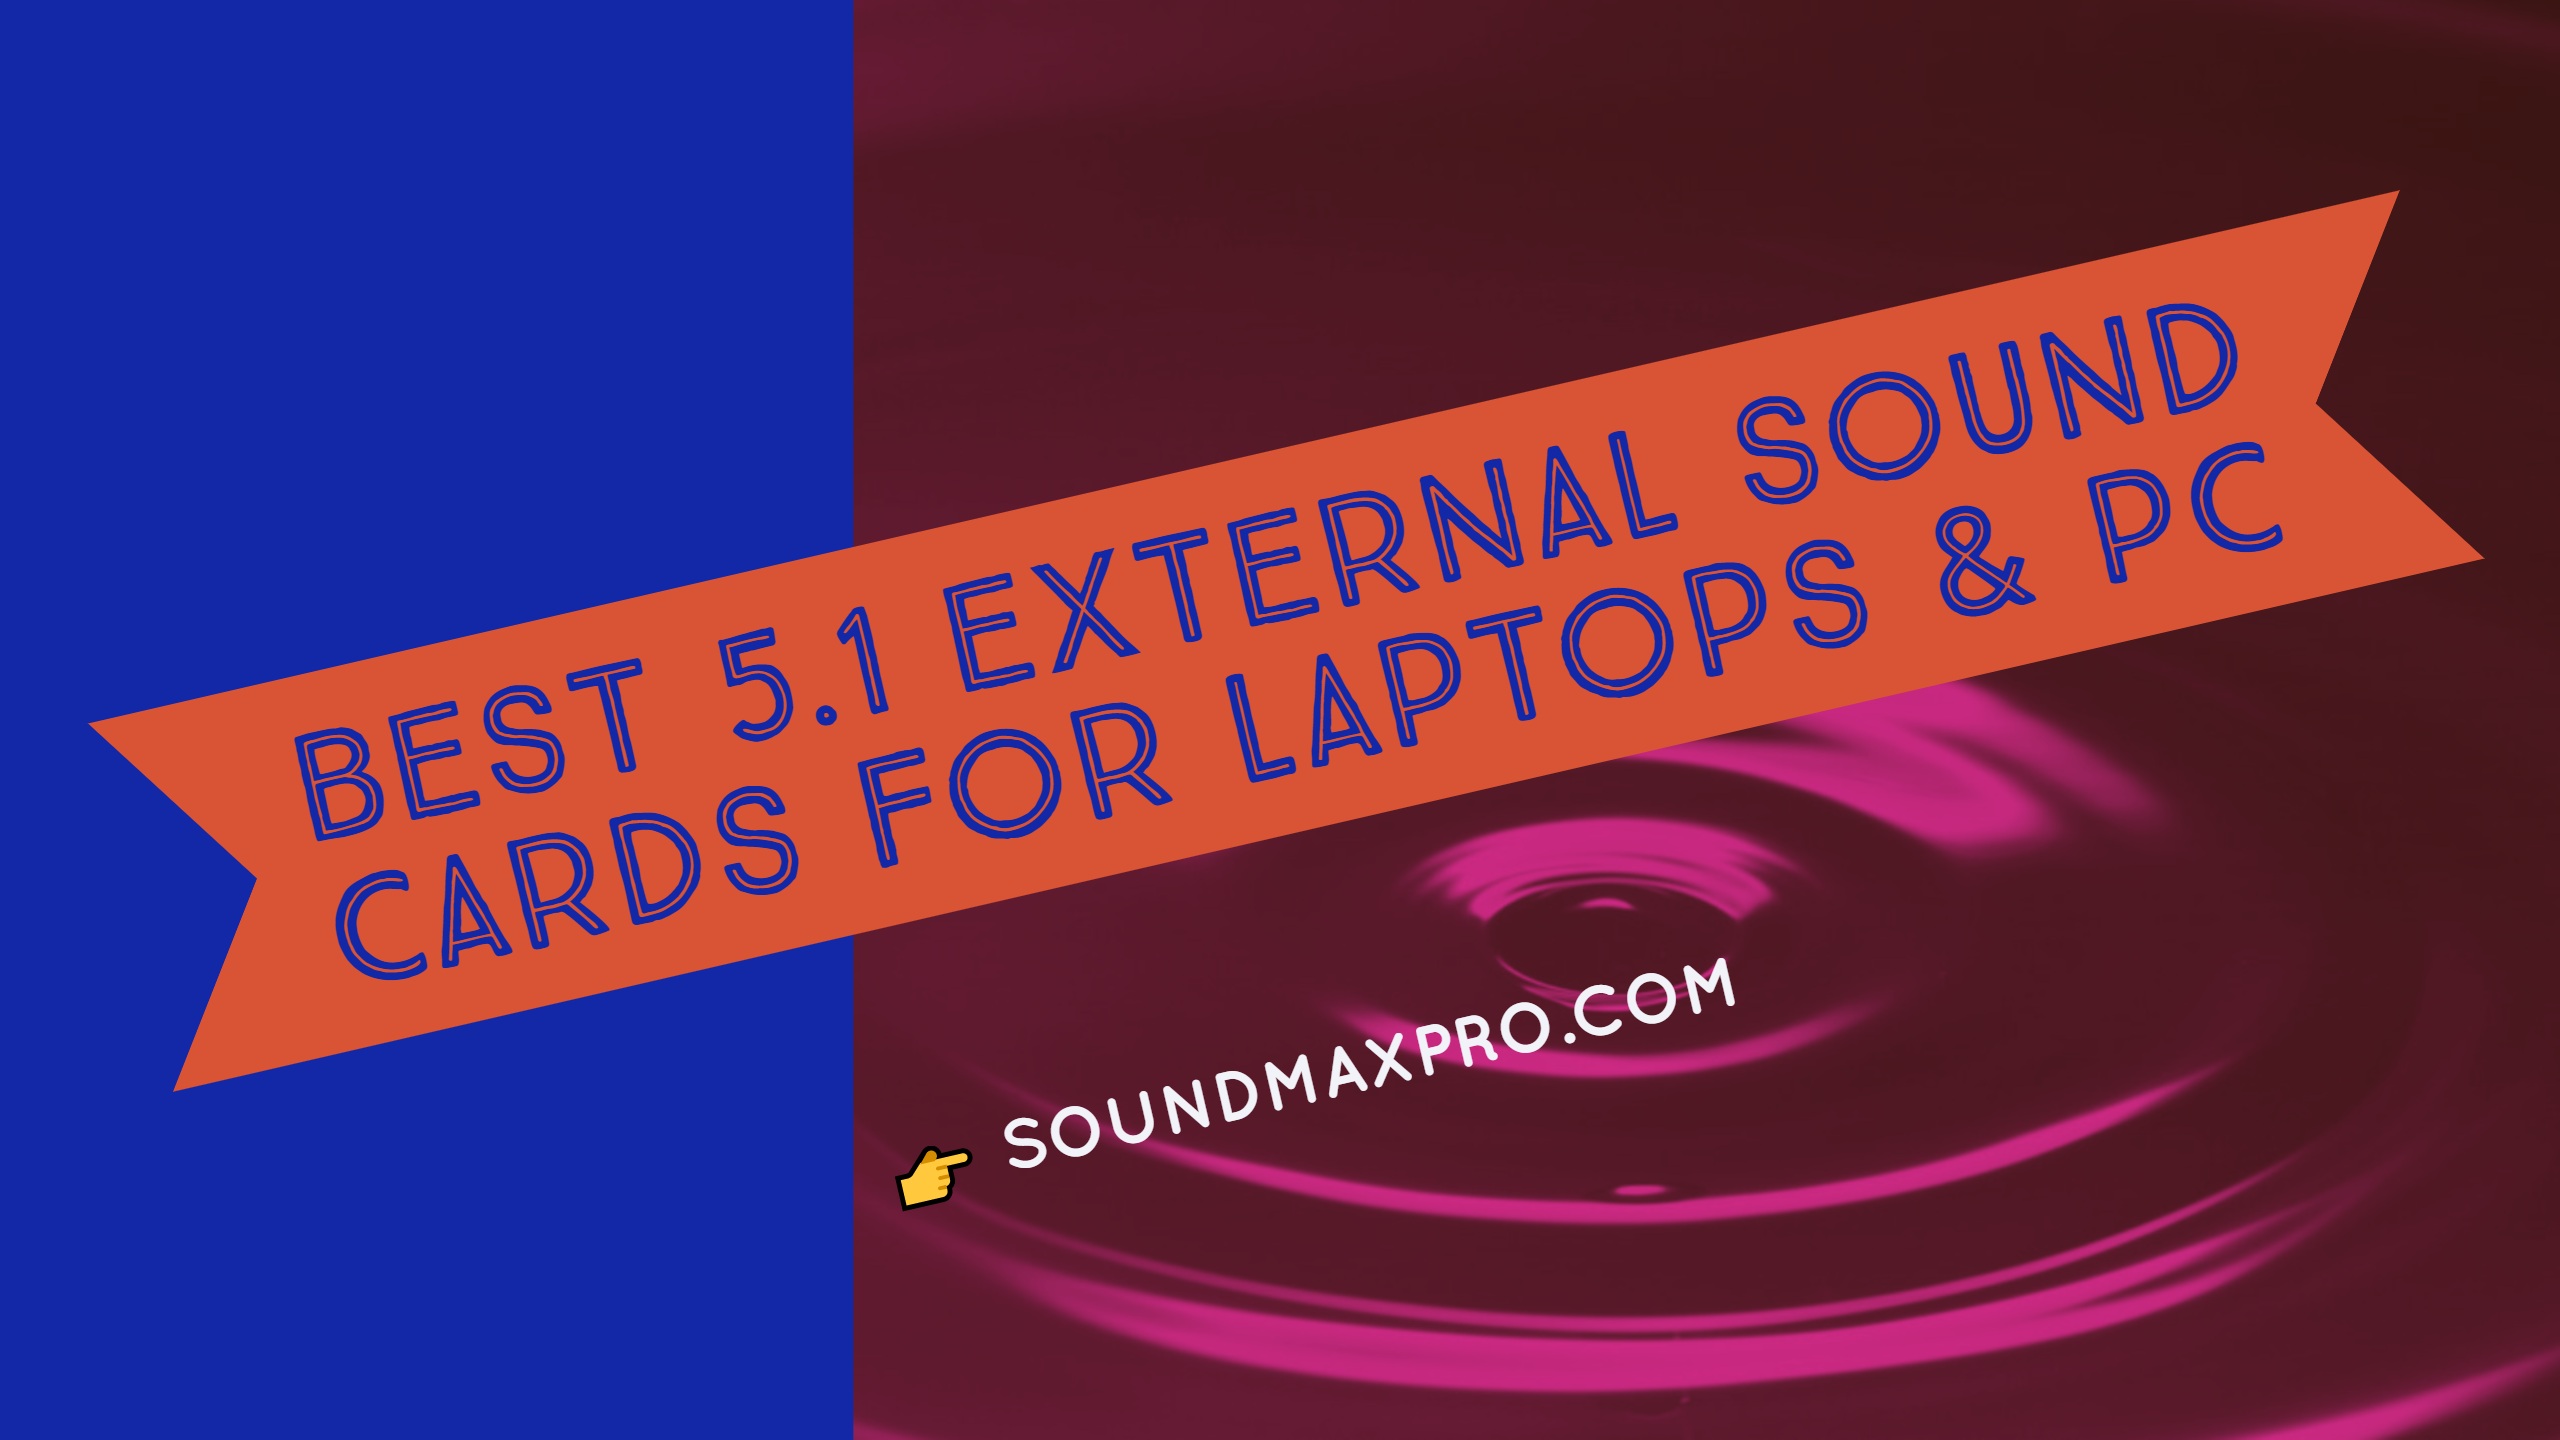 Best 5.1 External Sound Cards